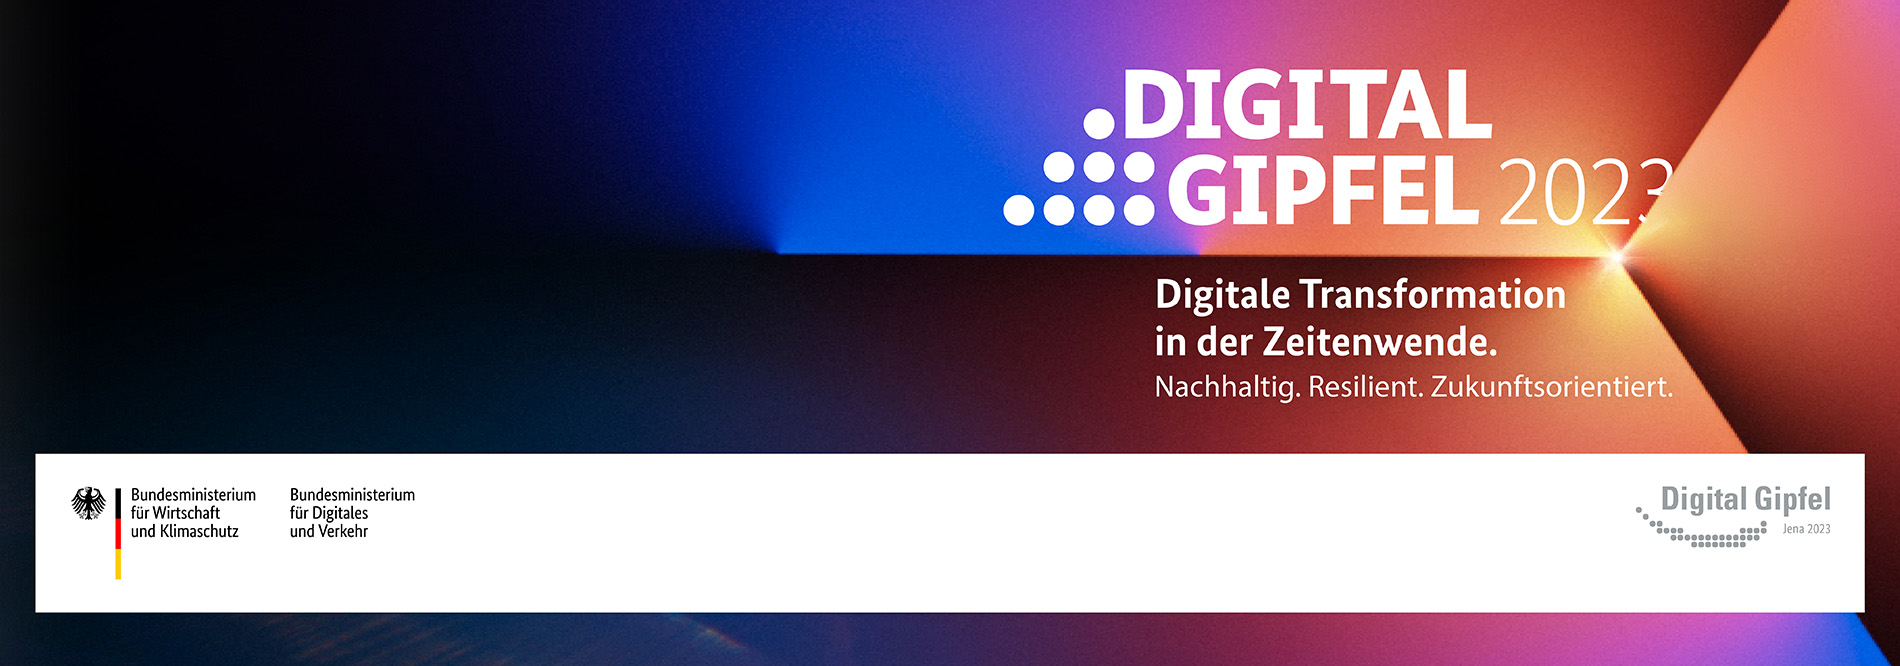 Digital Gipfel 2023 | Foto: JenaKultur, Jürgen Scheere